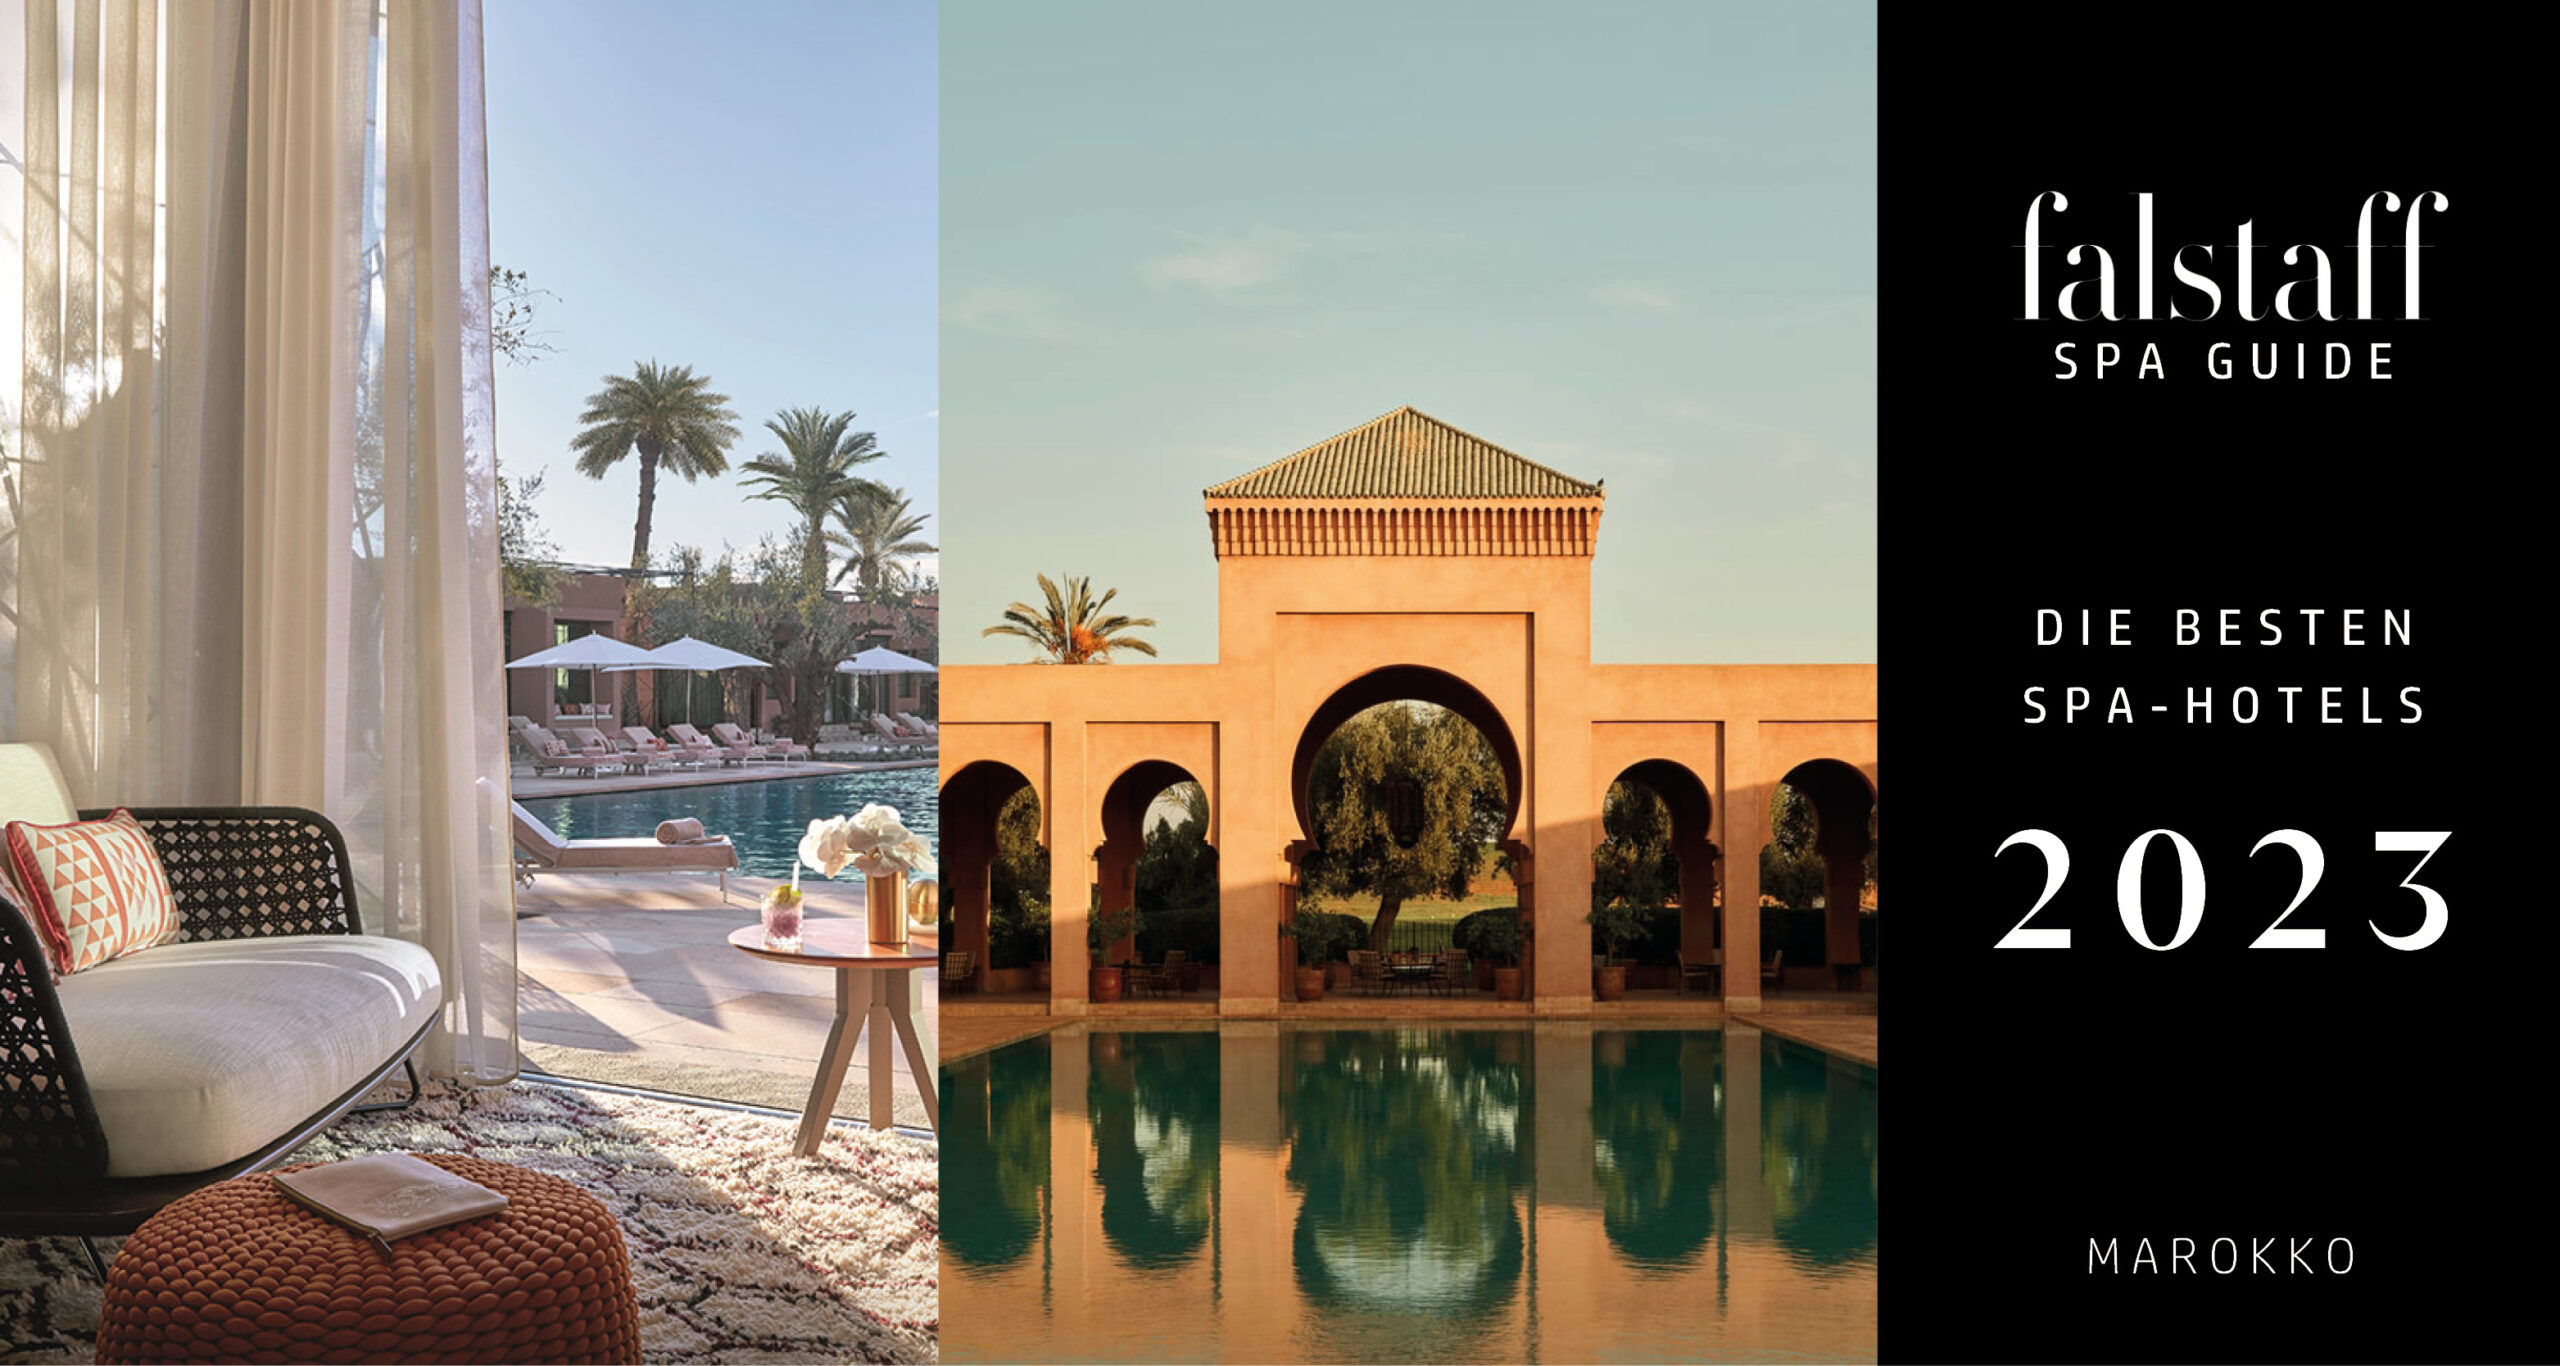 SPA Guide 2023: Die besten Spa-Hotels in Marrakesch